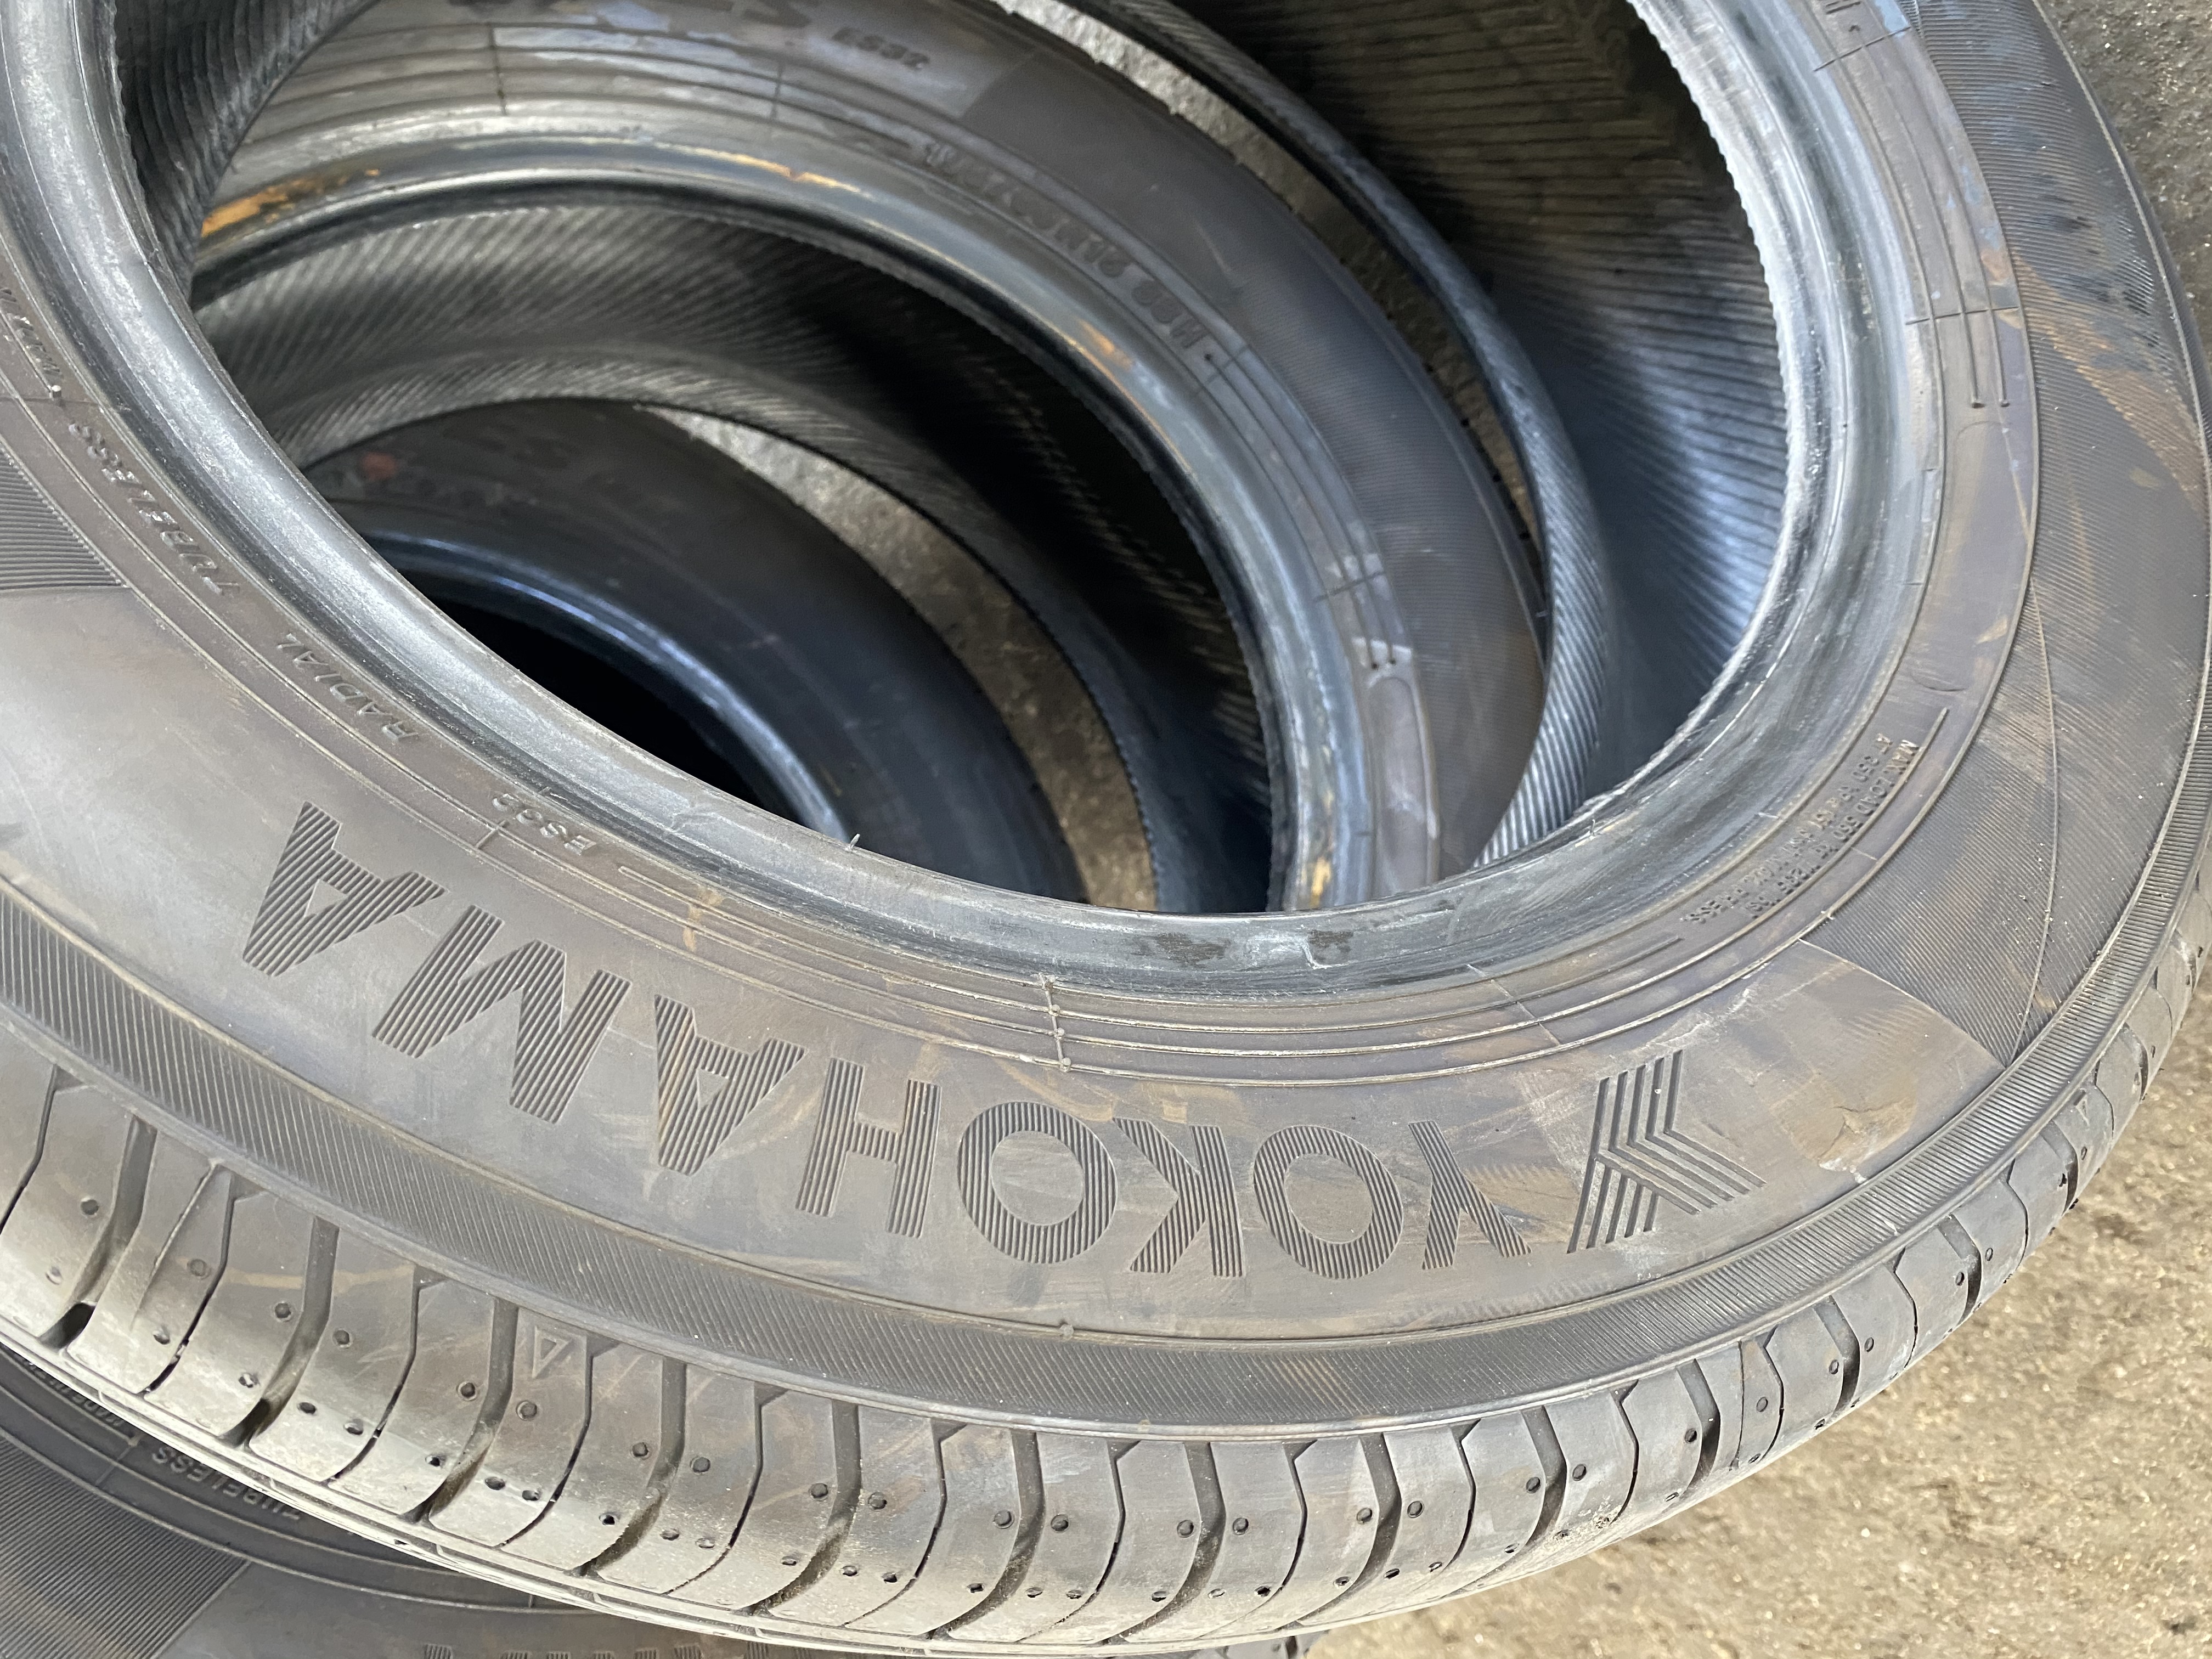 Yokohama tyres